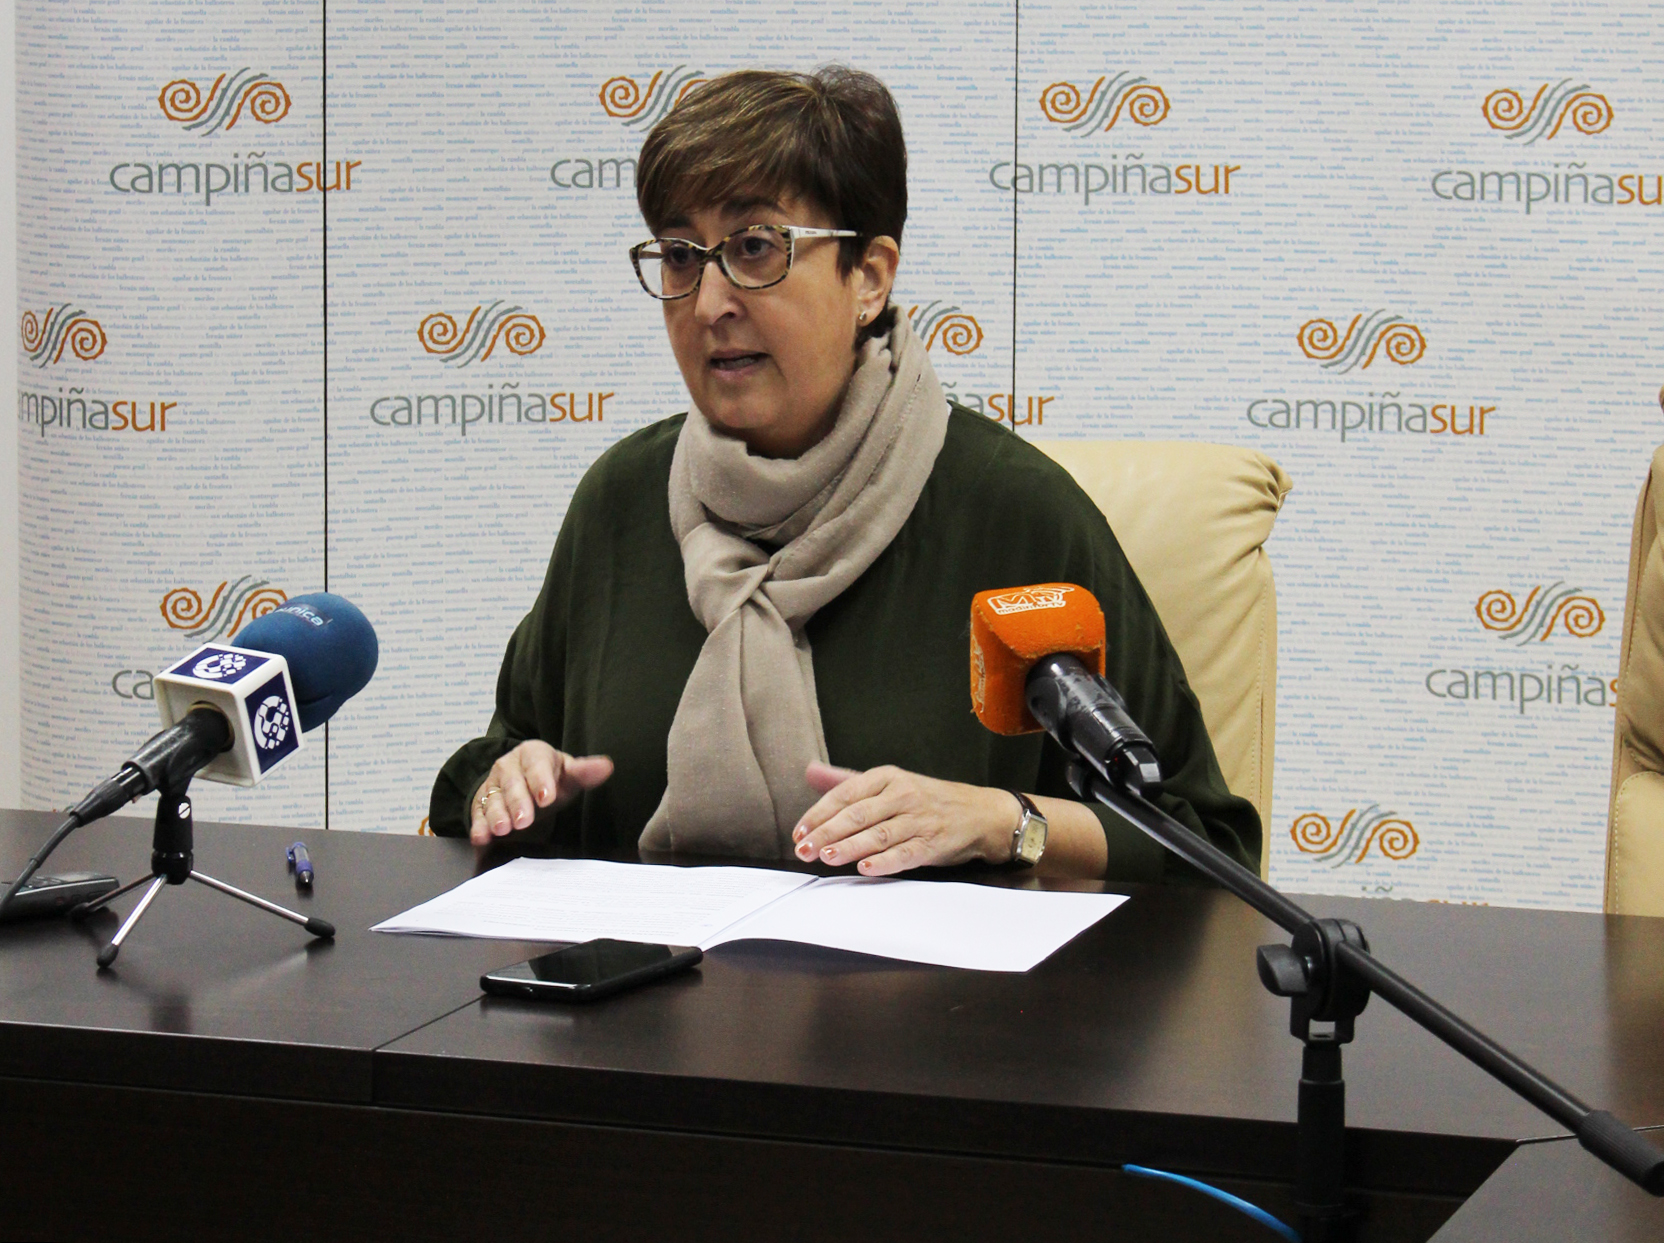 La presidenta de la Entidad, Francisca Carmona, ha dado a conocer dos importantes proyectos que comenzarán en las próximas semanas y generarán más de una veintena de puestos de trabajo